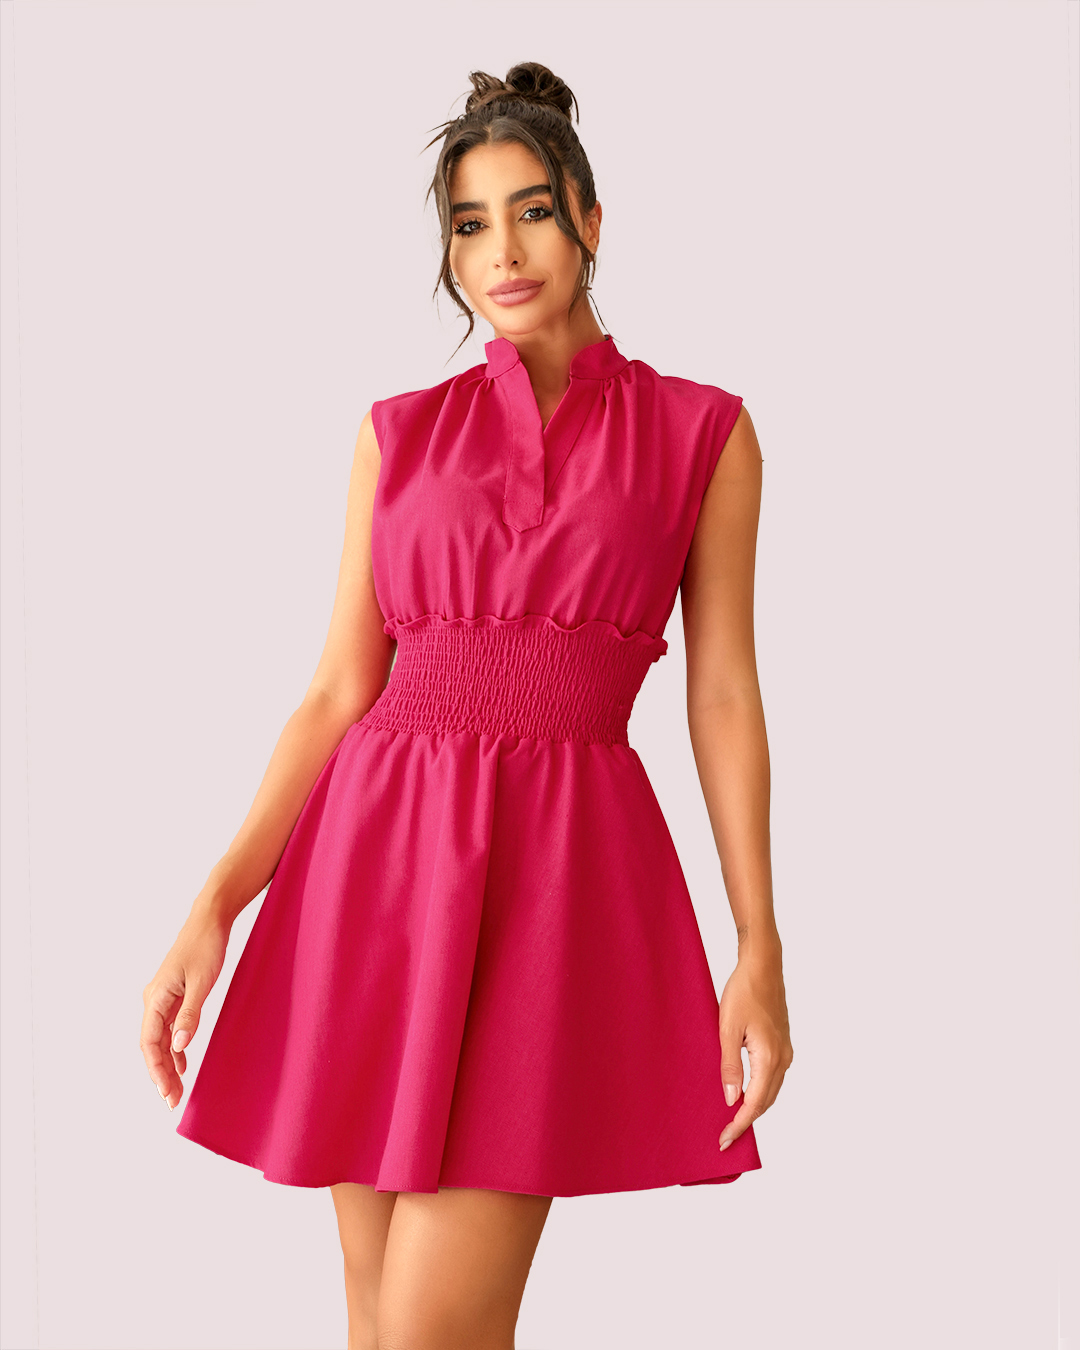 Dot Clothing - Dress Dot Clothing workout wheeldo in Pink Linen - 1880PINK